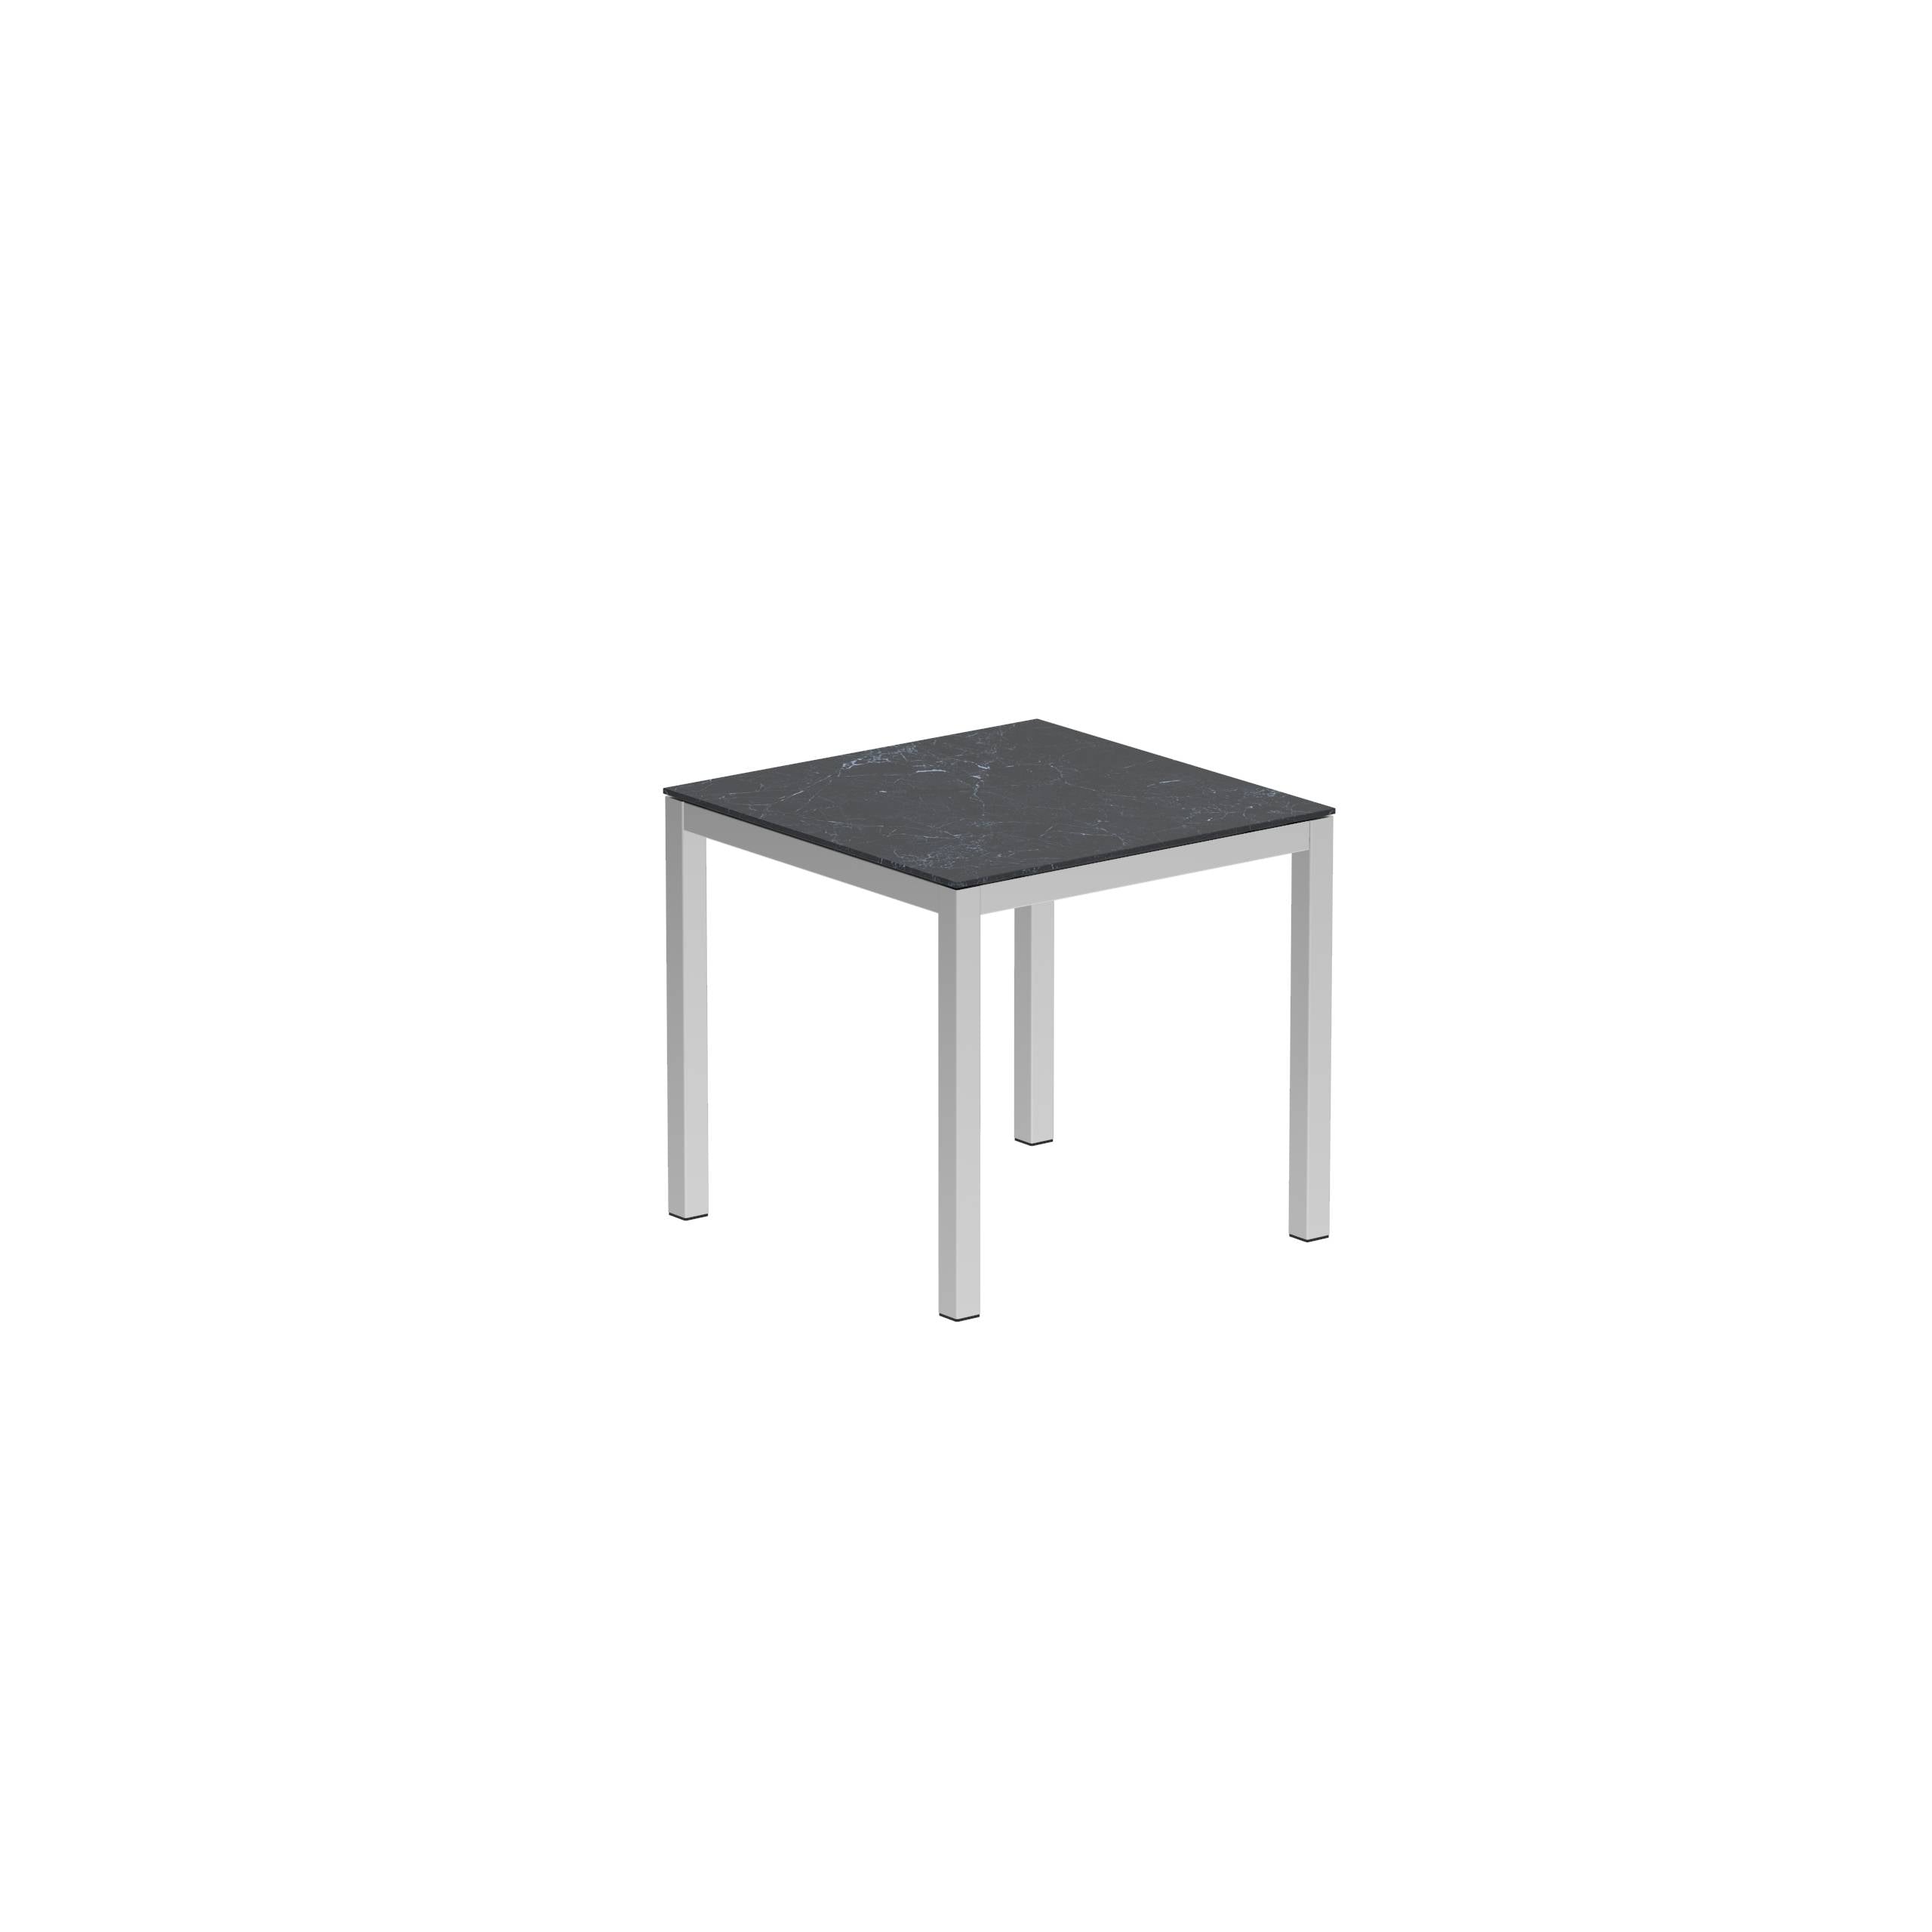 Taboela Table 80x80cm Ep + Ceramic Top Nero Marquina